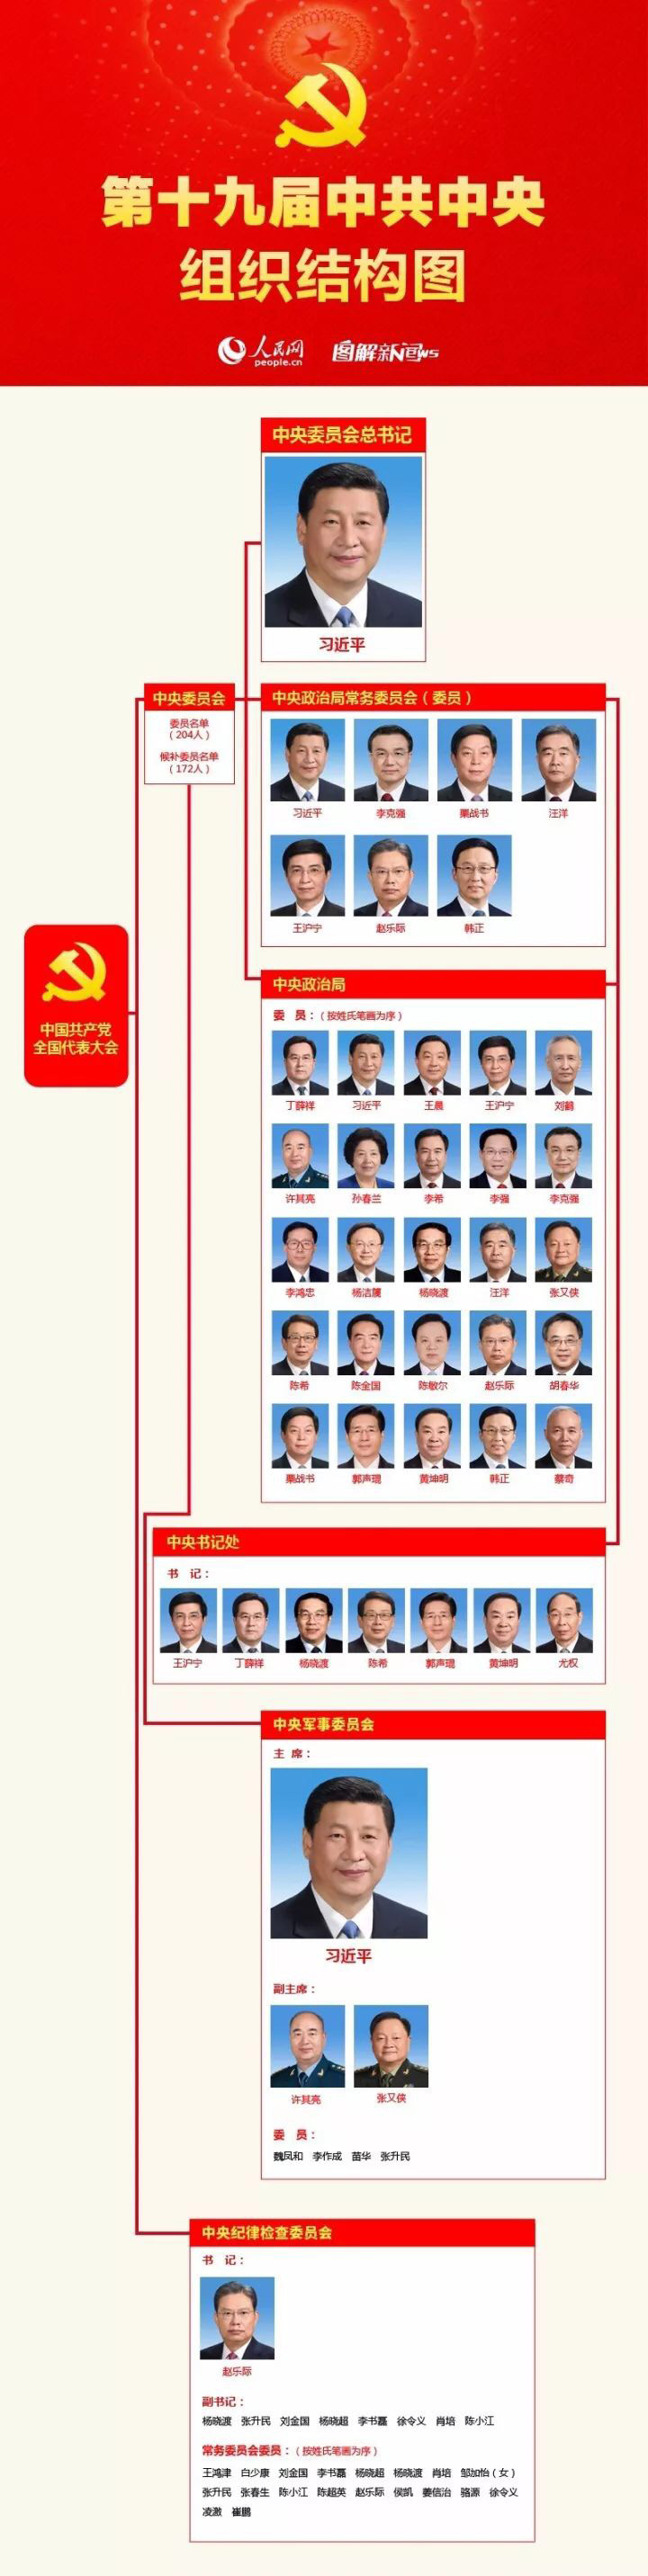 中國共產黨第十九屆中央委員會